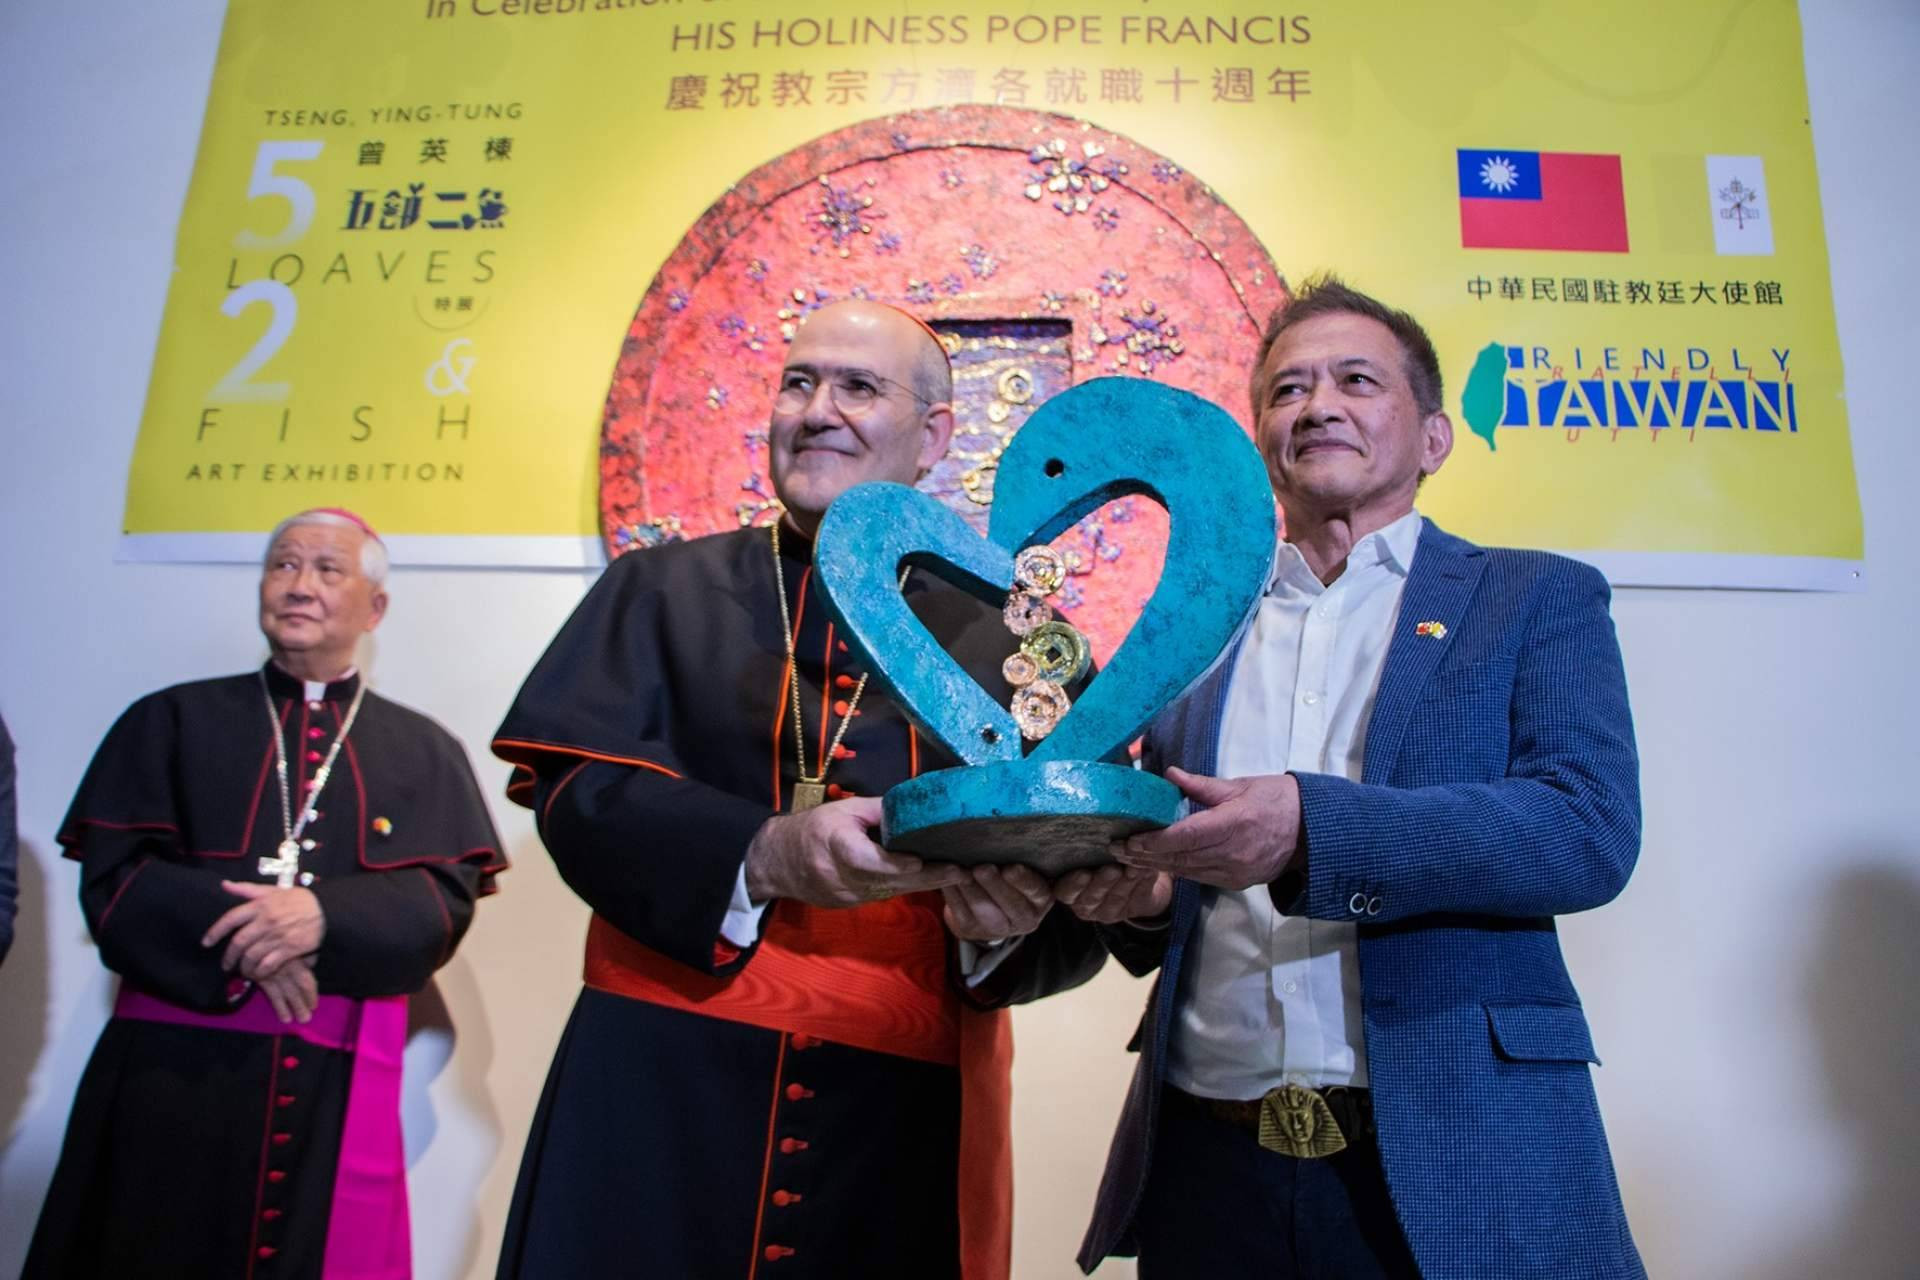  La Embajada de Taiwán ante la Santa Sede inaugura exposición 